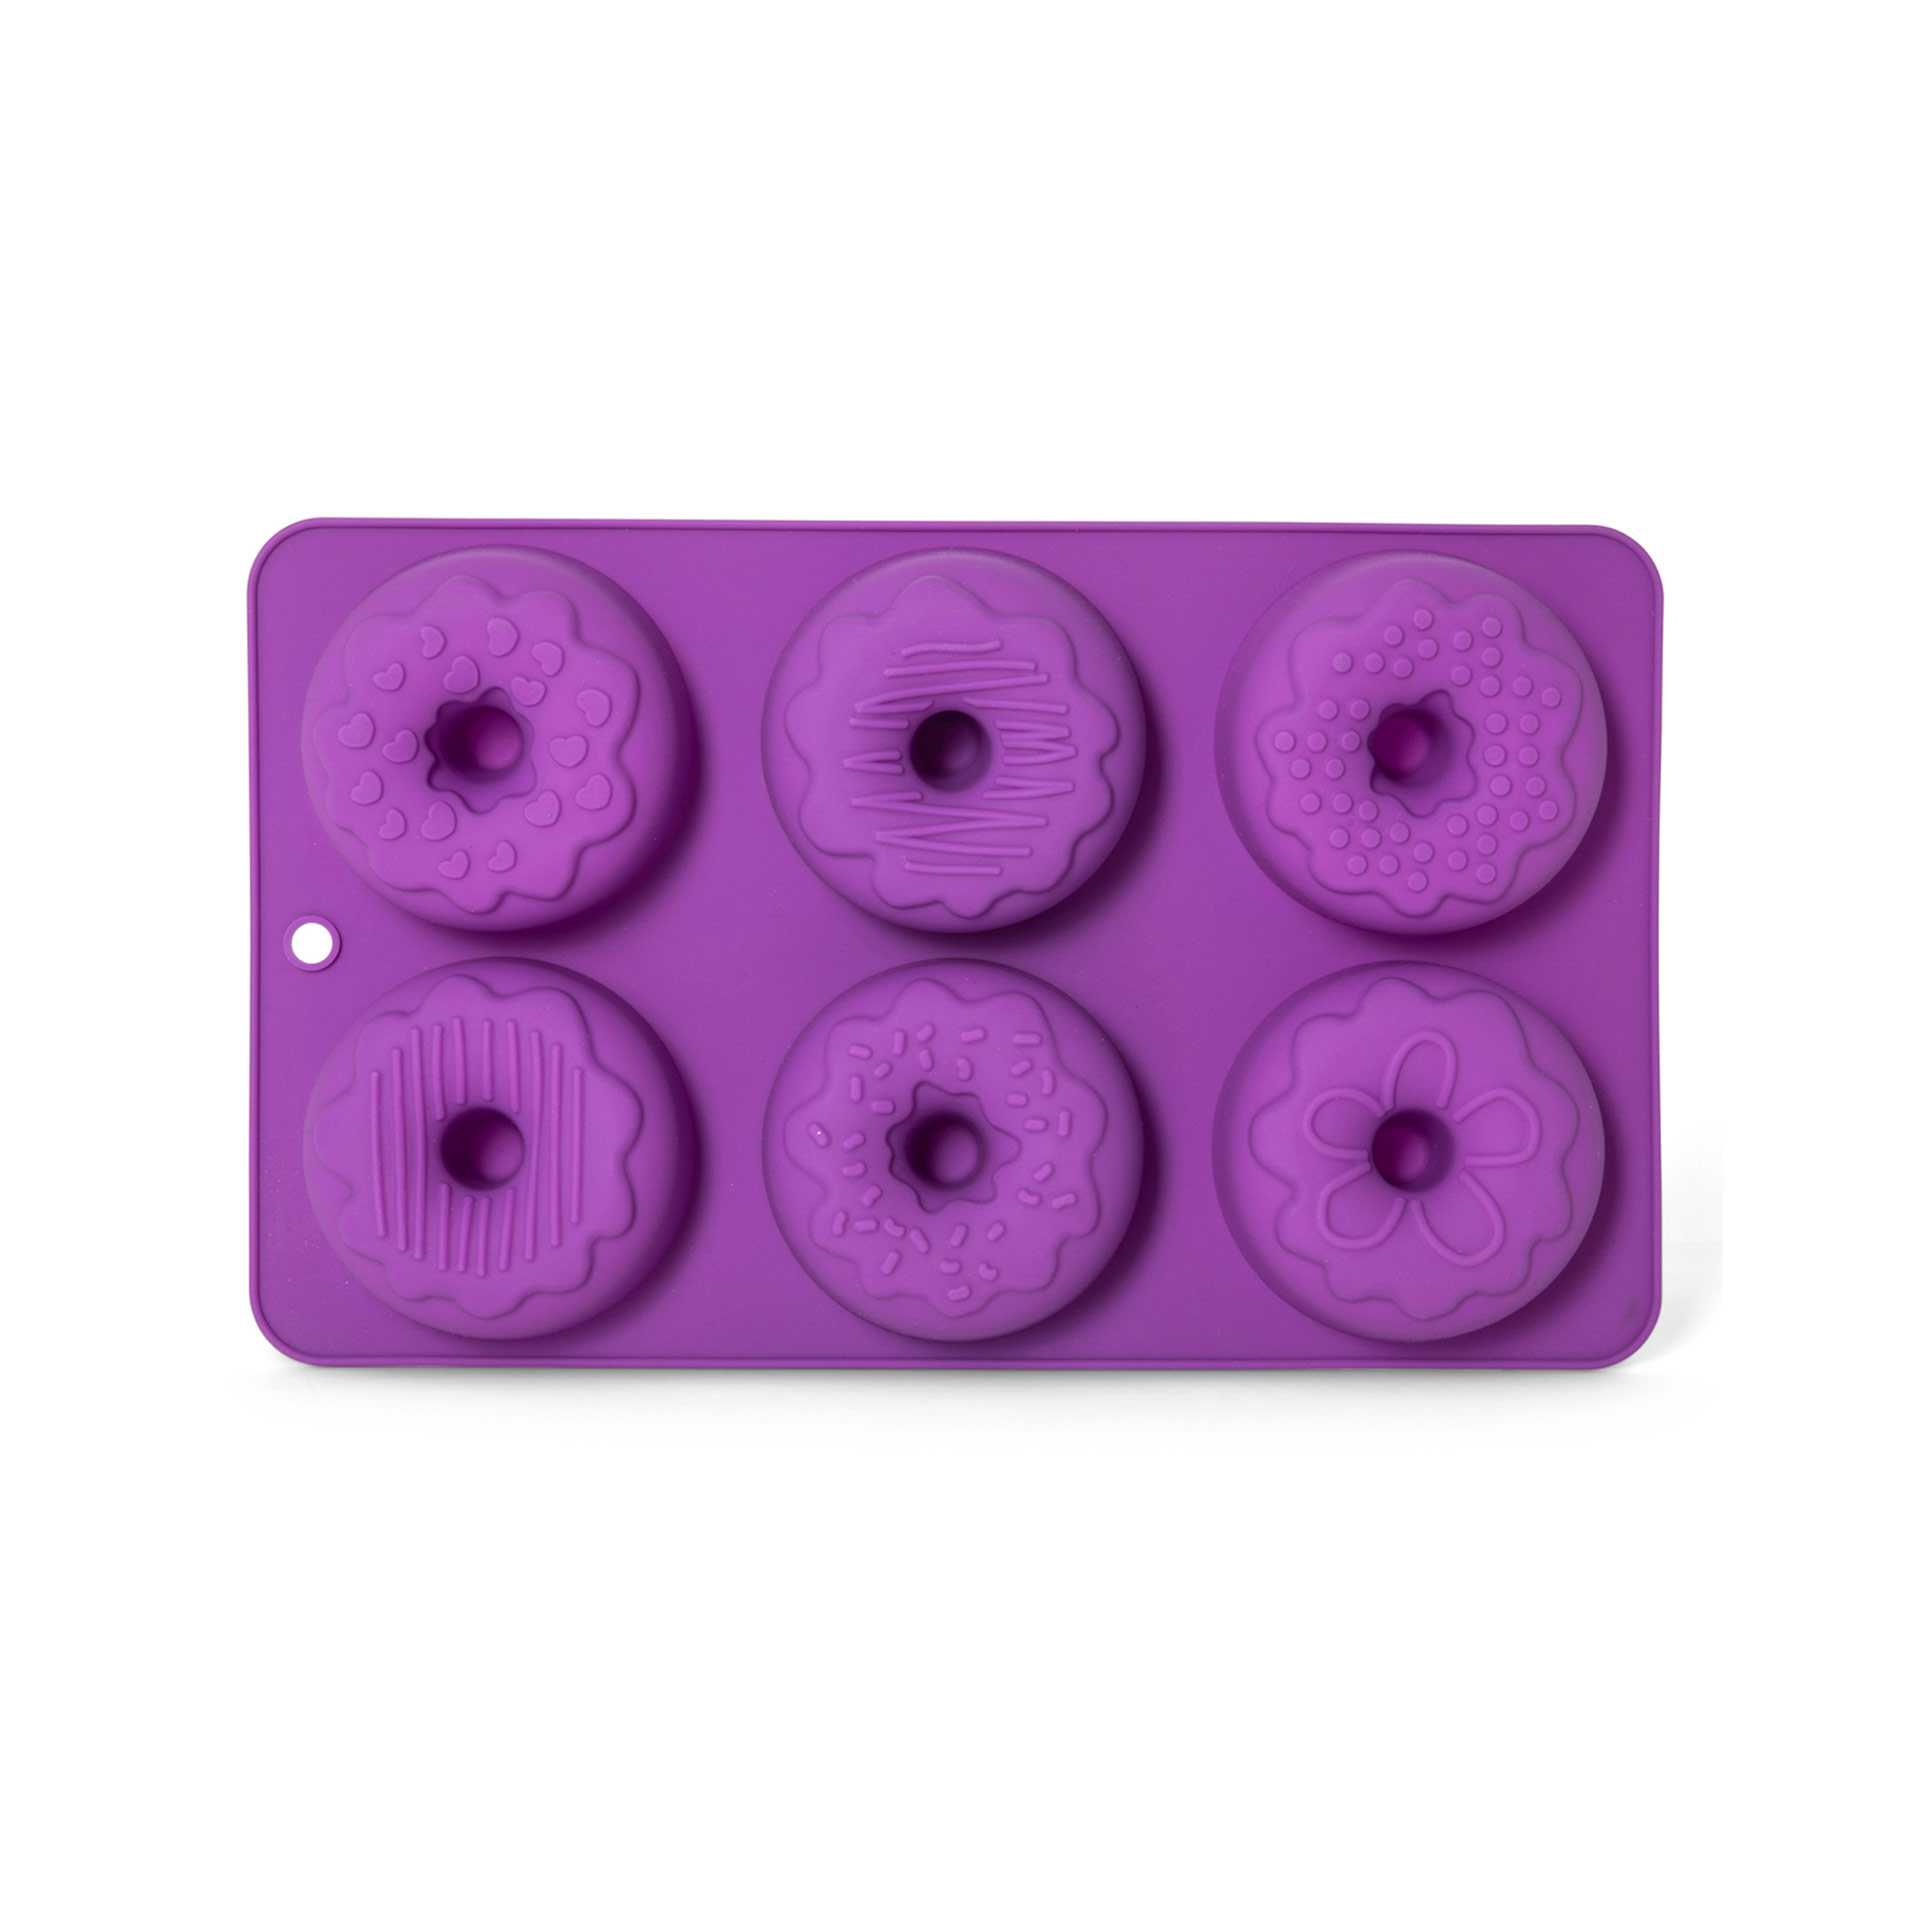 Stampo In Silicone Per 6 Donut Con Decorazioni, , large